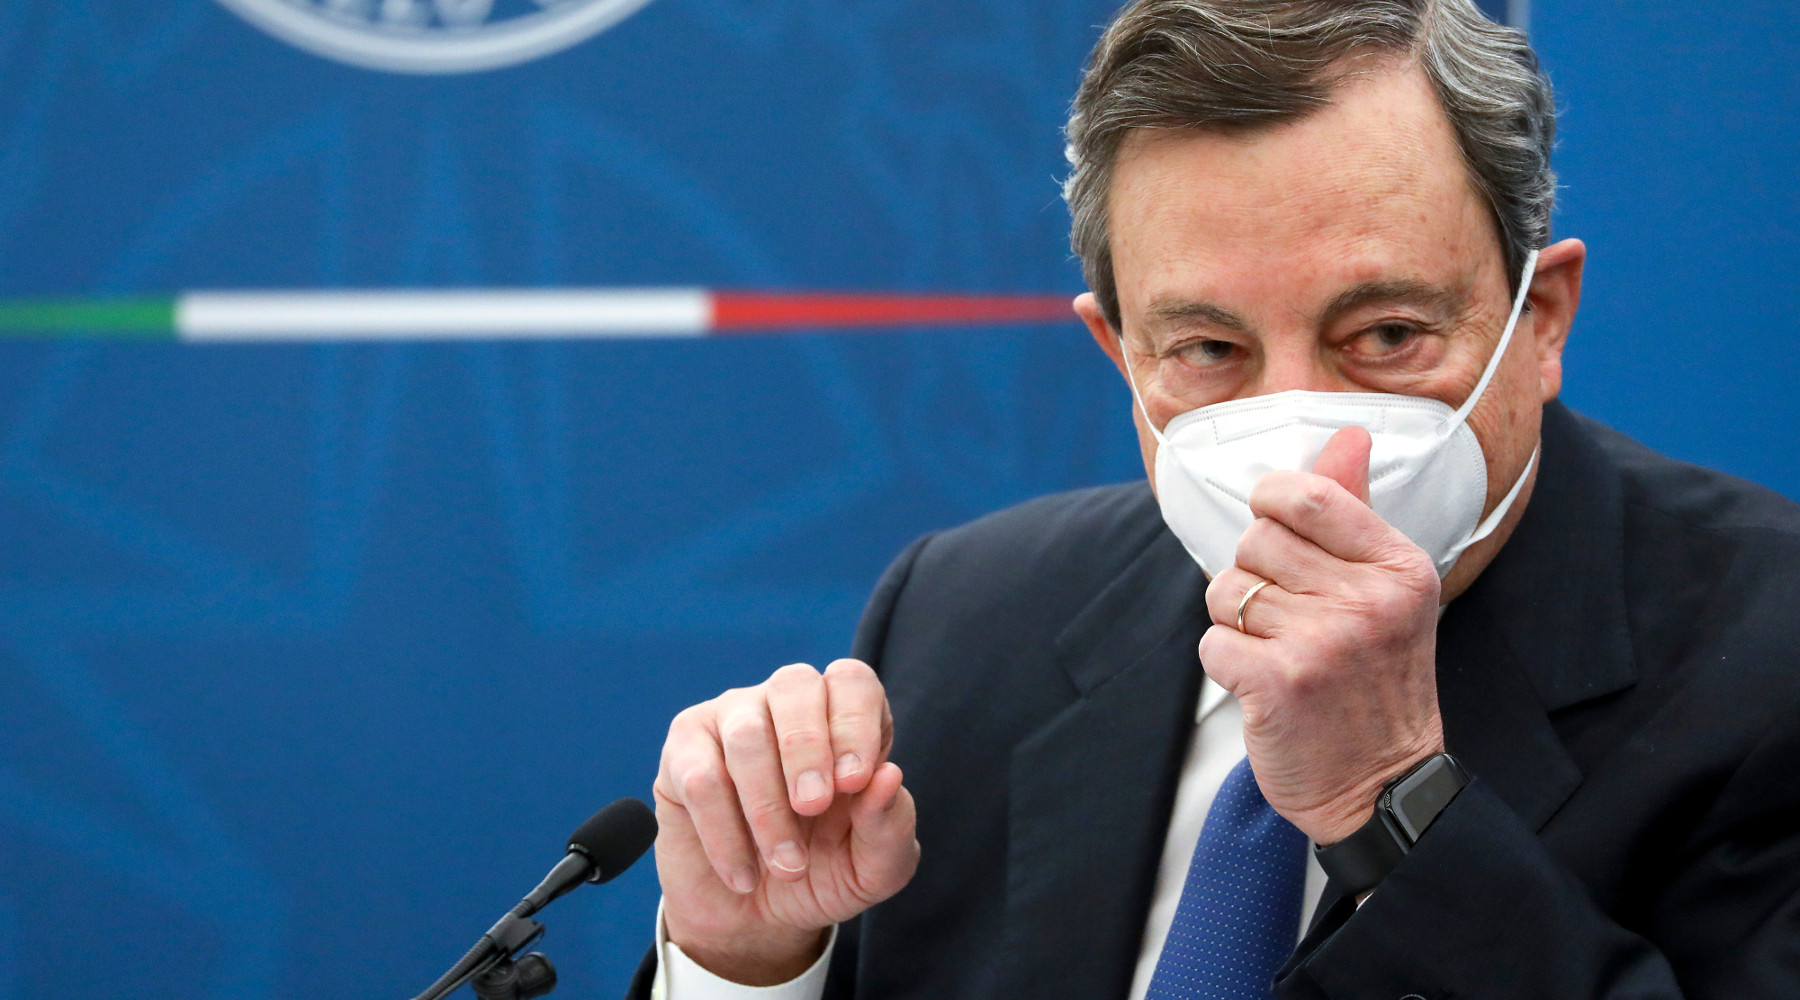 Stato d’emergenza e porto d’armi: Mario Draghi in conferenza stampa con mascherina